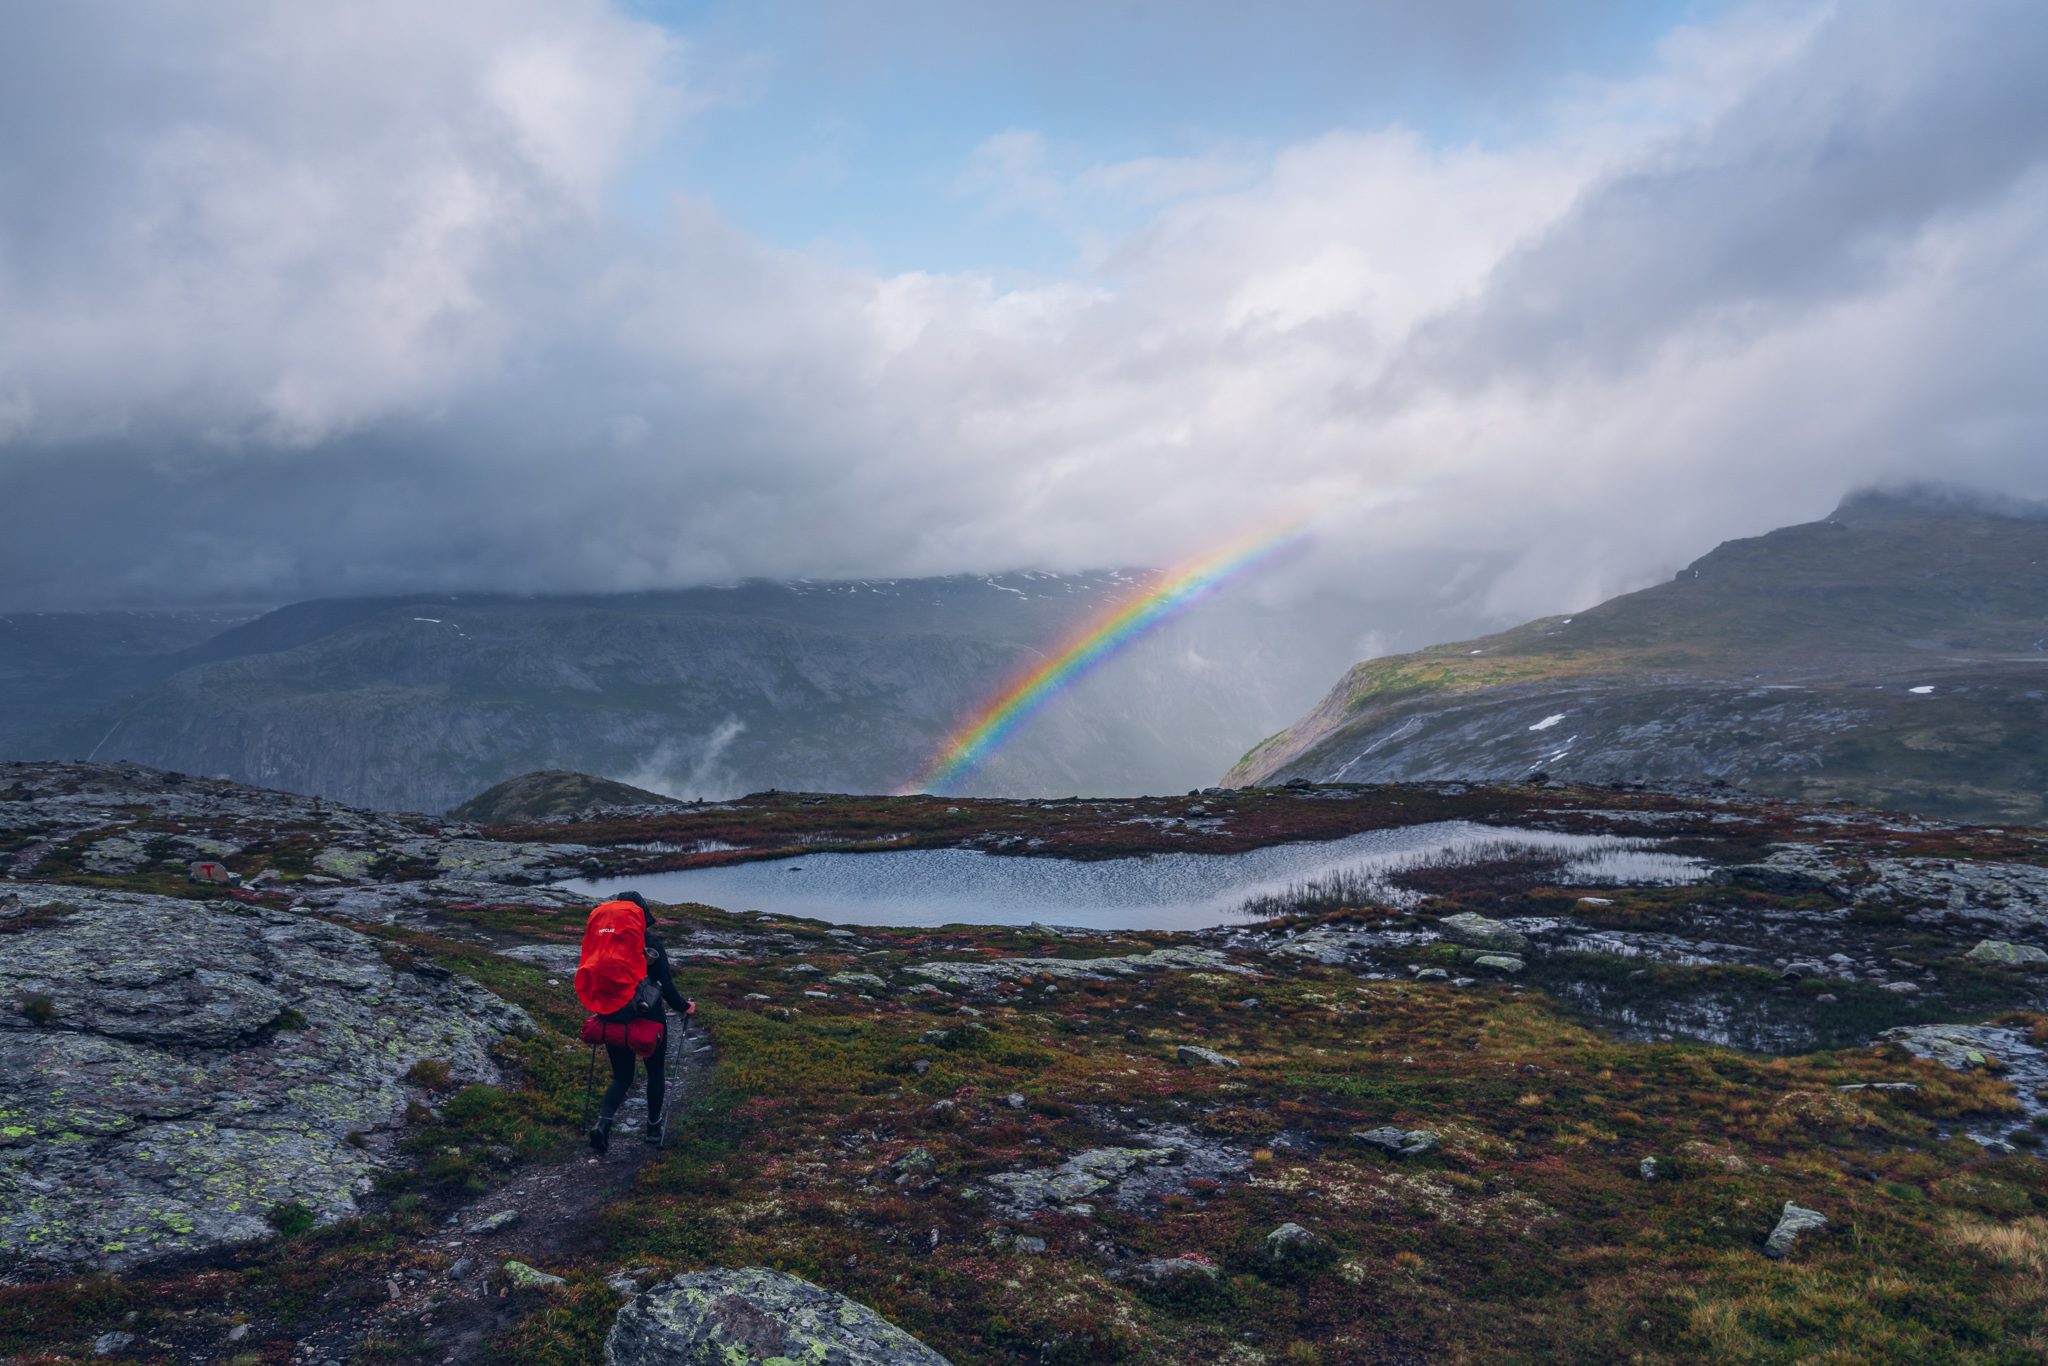 Hiken in Noorwegen: 7-daagse trektocht dwars door Hardangervidda